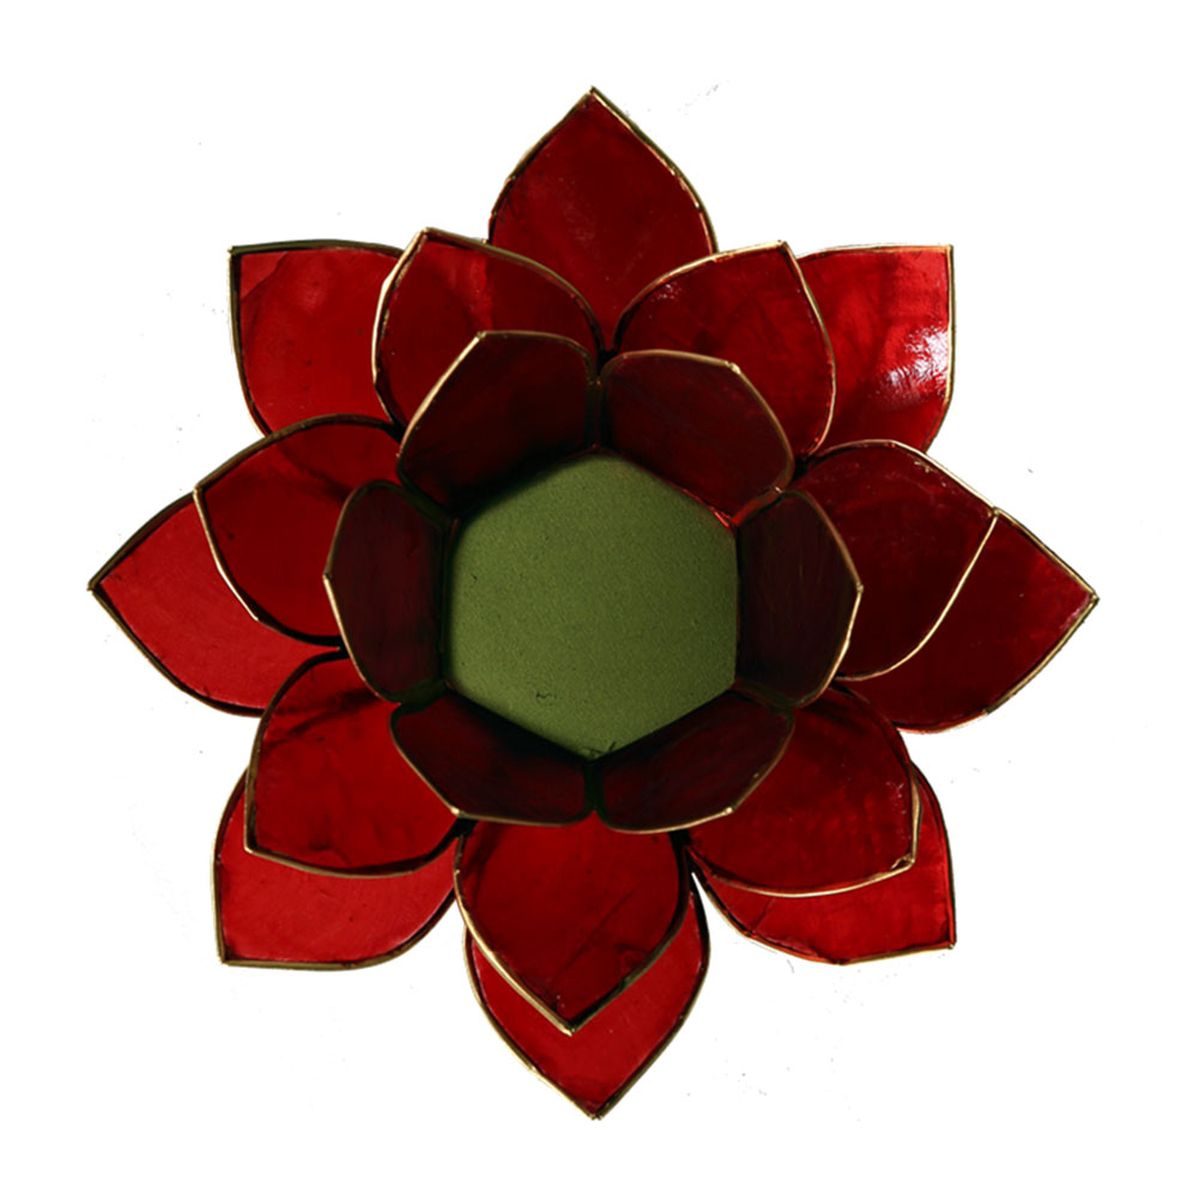 Lotus candleholder chakra 1 Red goldlining